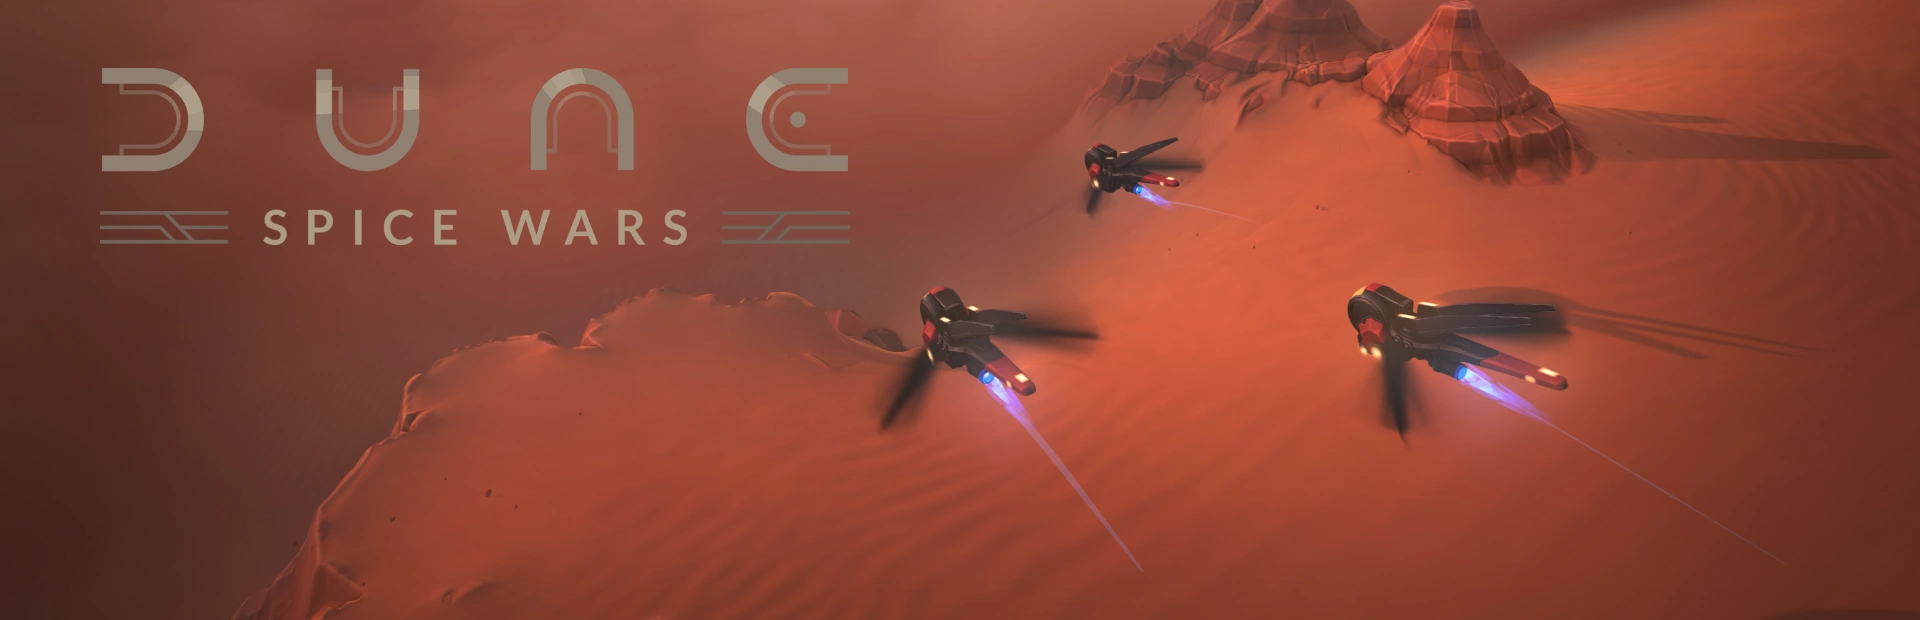 دانلود بازی Dune: Spice Wars برای کامپیوتر | گیمباتو